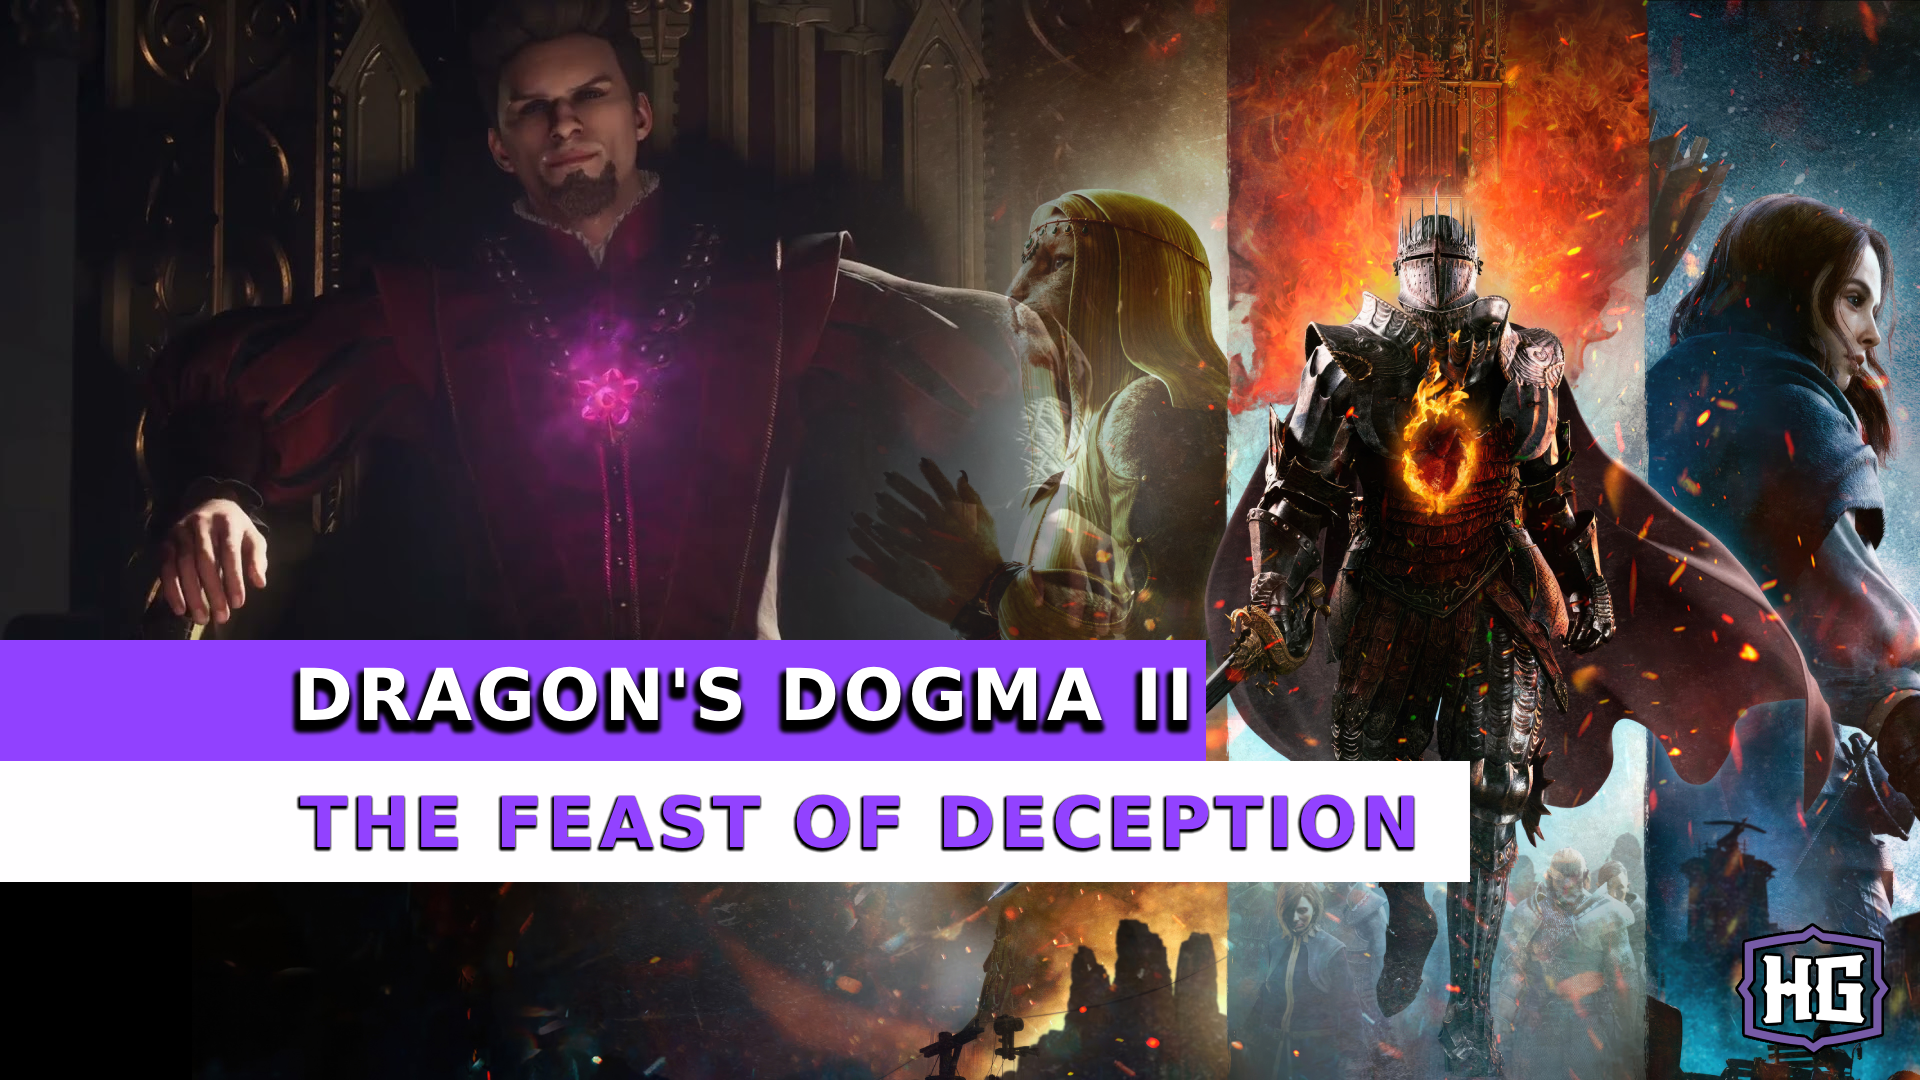 feast of deception dd2